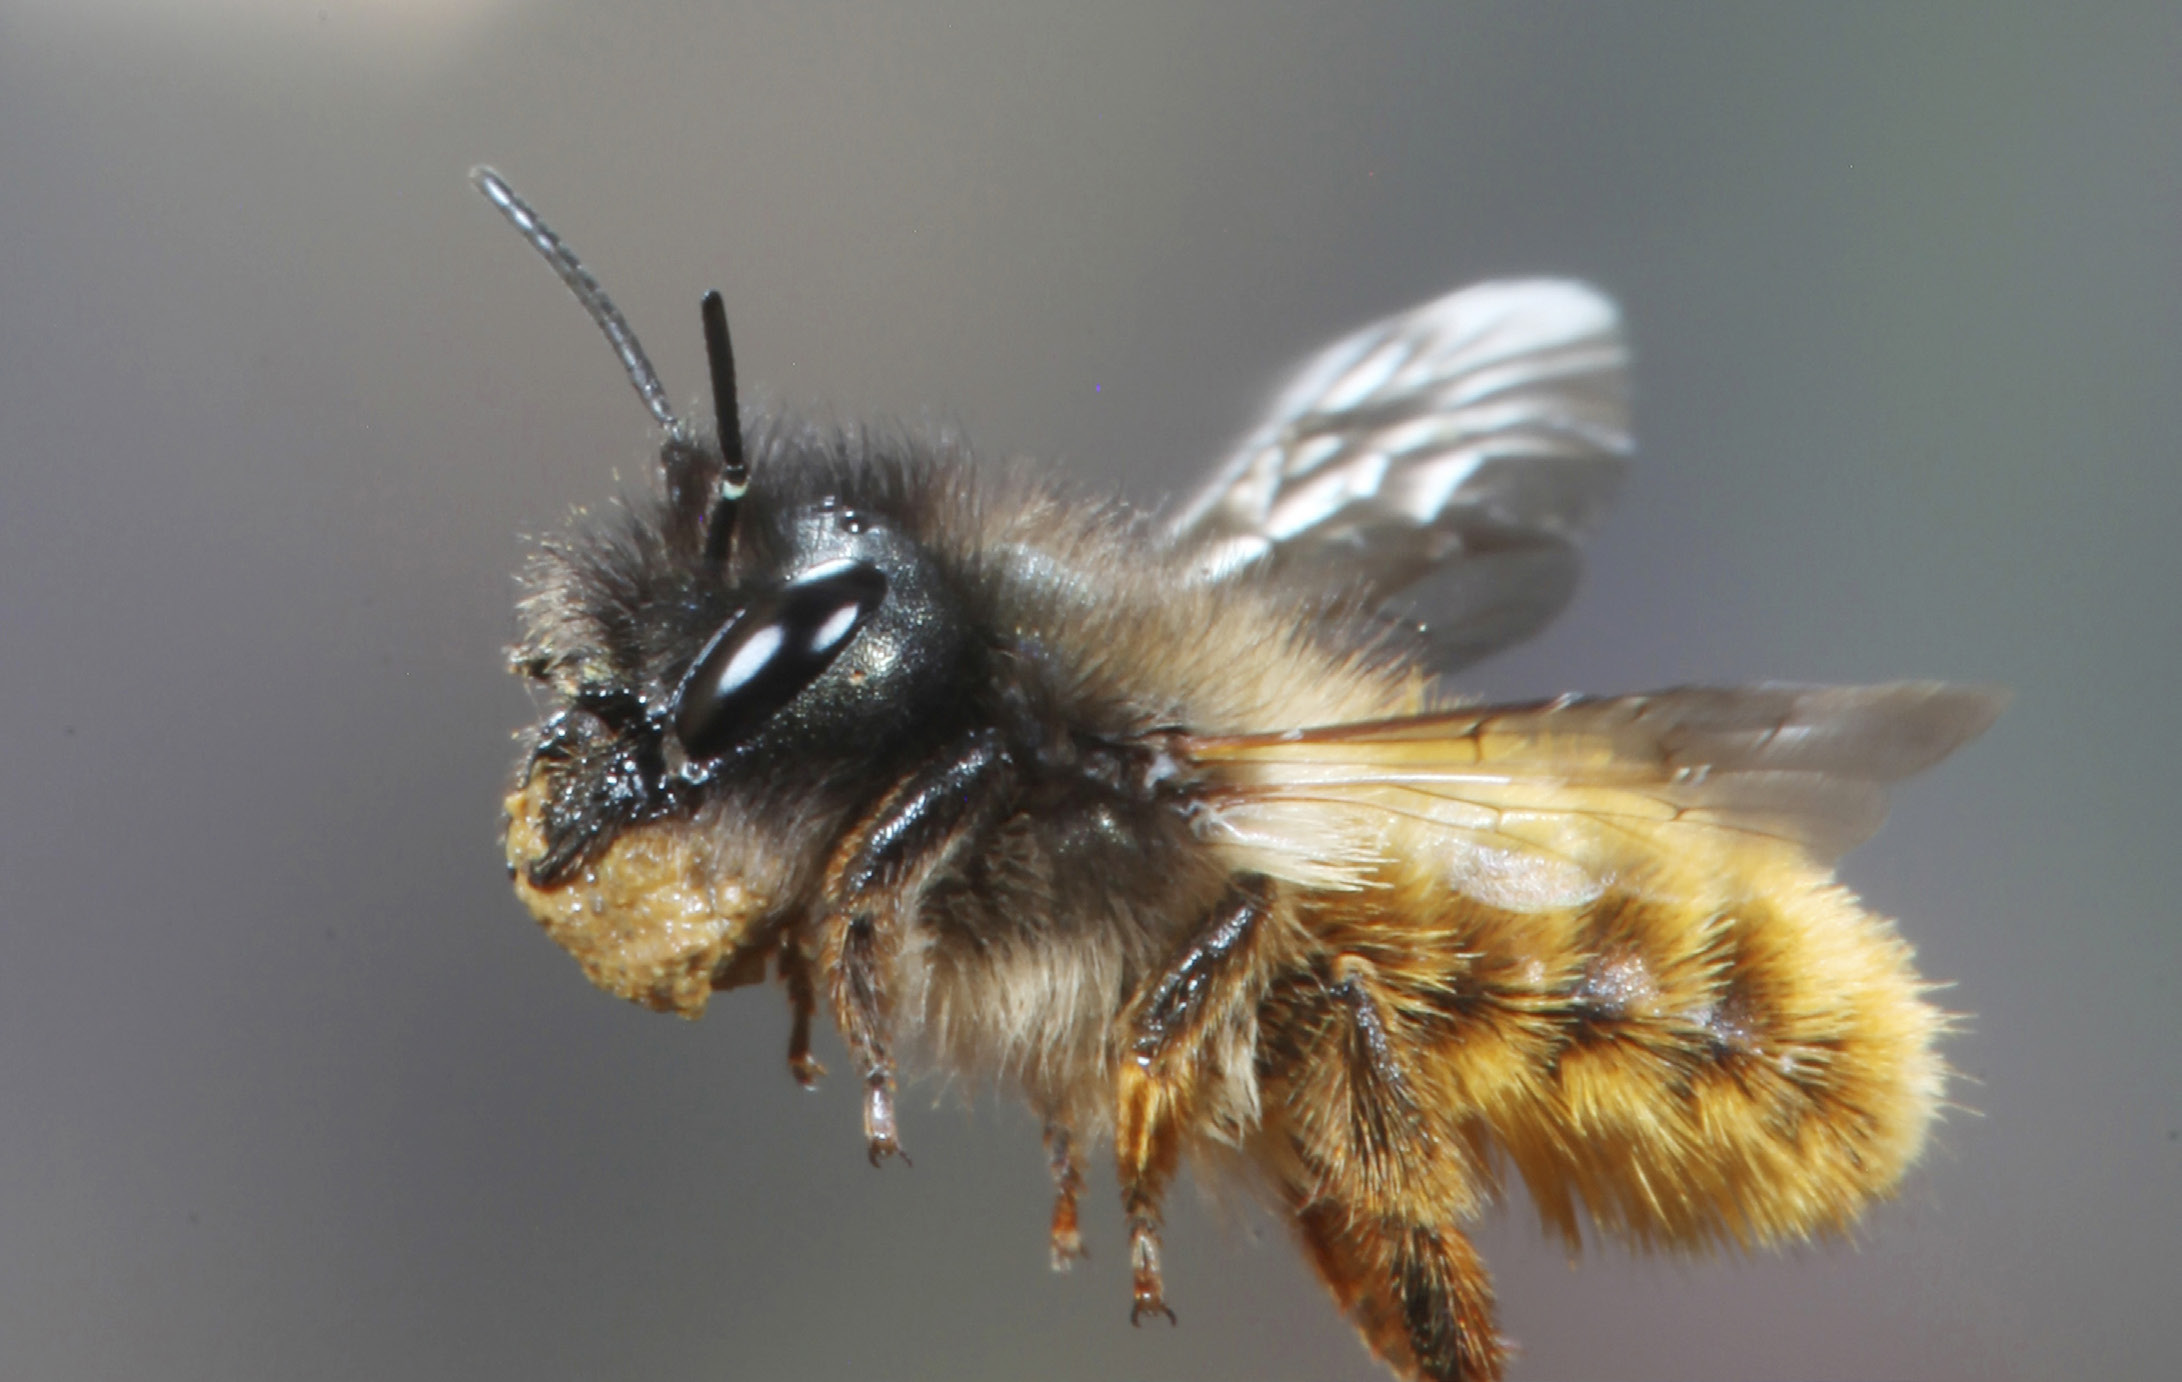 Rote Mauerbiene Kim Taylor / NPL Bienen bestehenden Risiken ähnlich hoch oder höher.